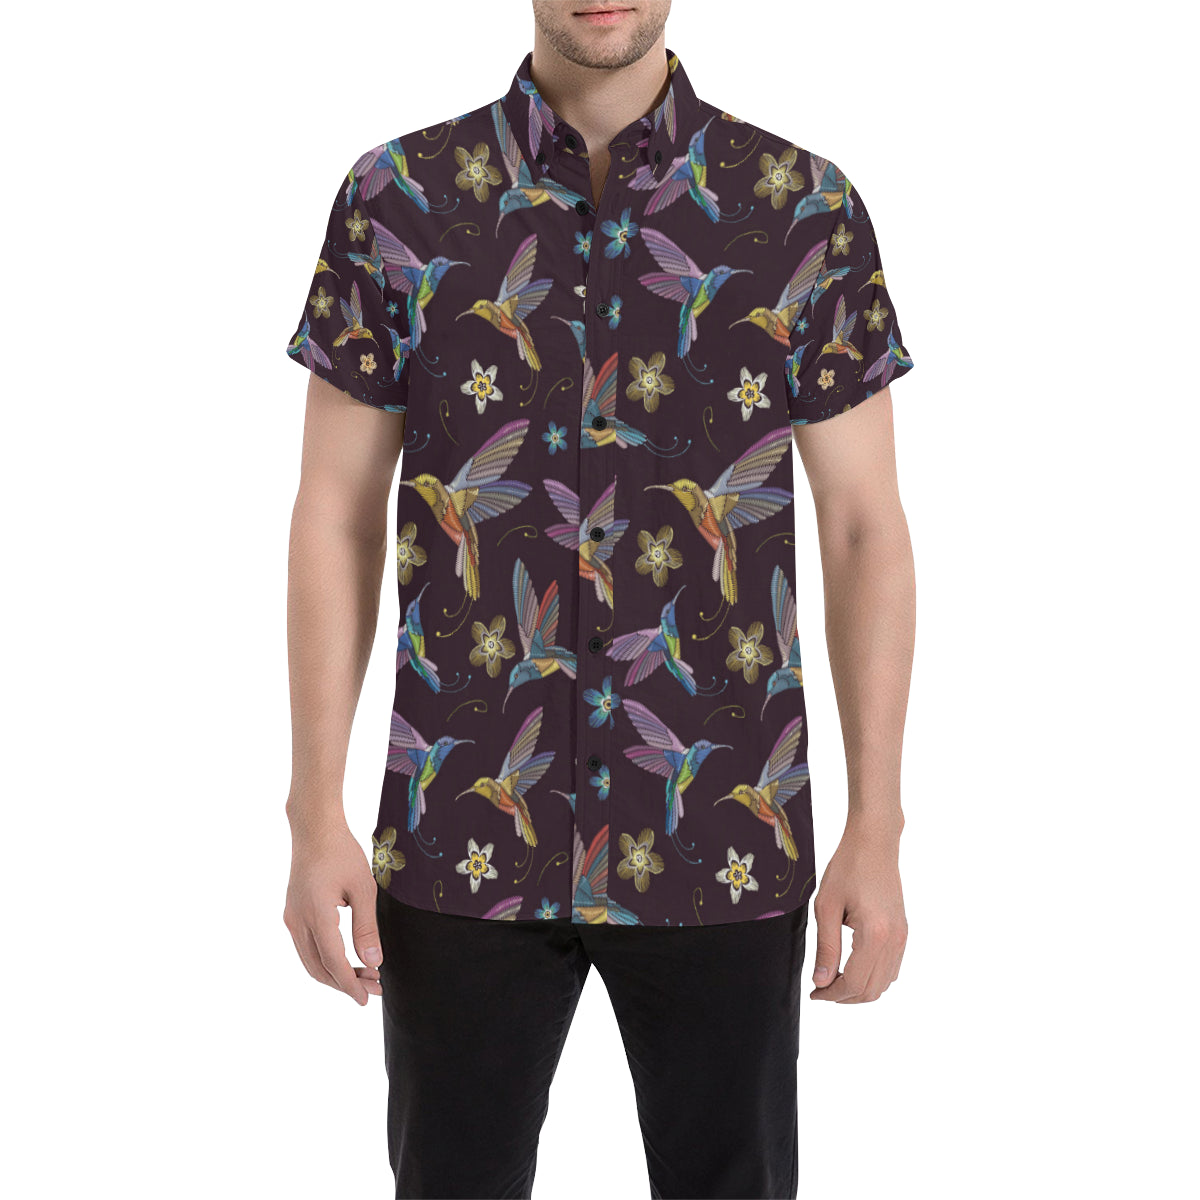 Hummingbird Pattern Print Design 04 Men's Short Sleeve Button Up Shirt